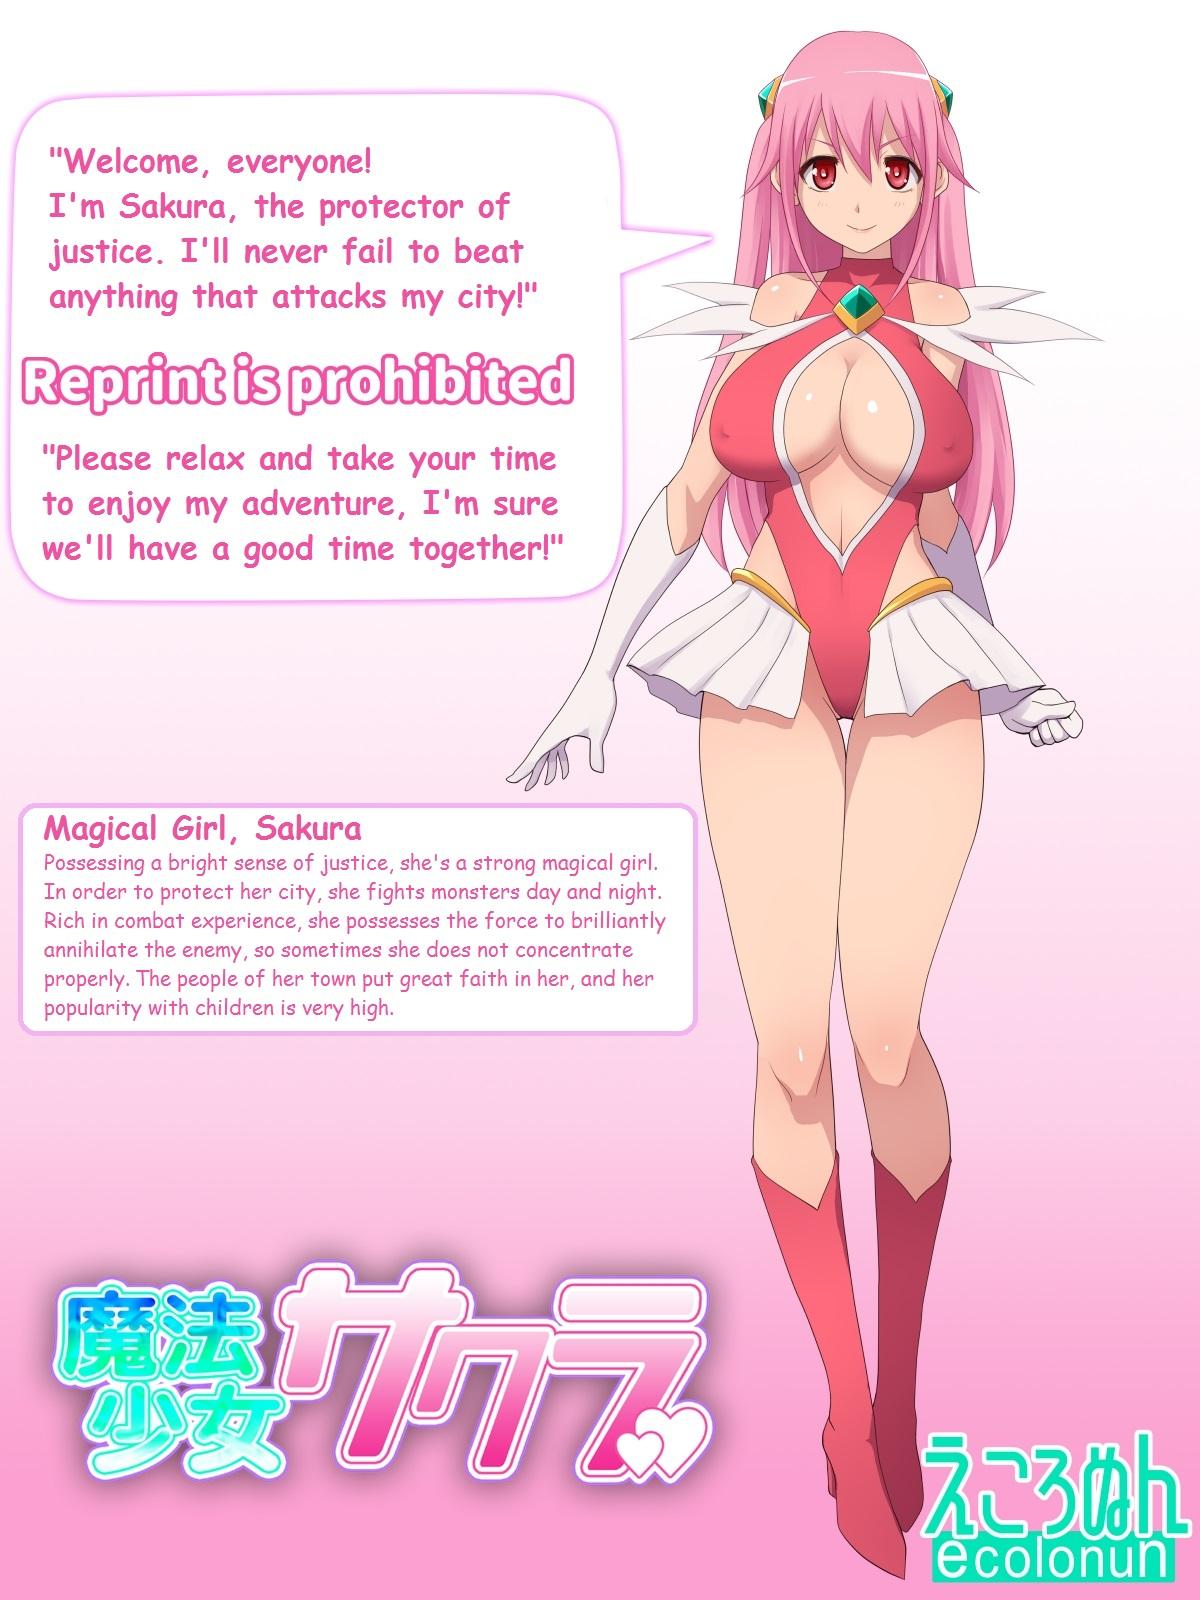 Sextoys Magical Girl Sakura - Original Cameltoe - Picture 2